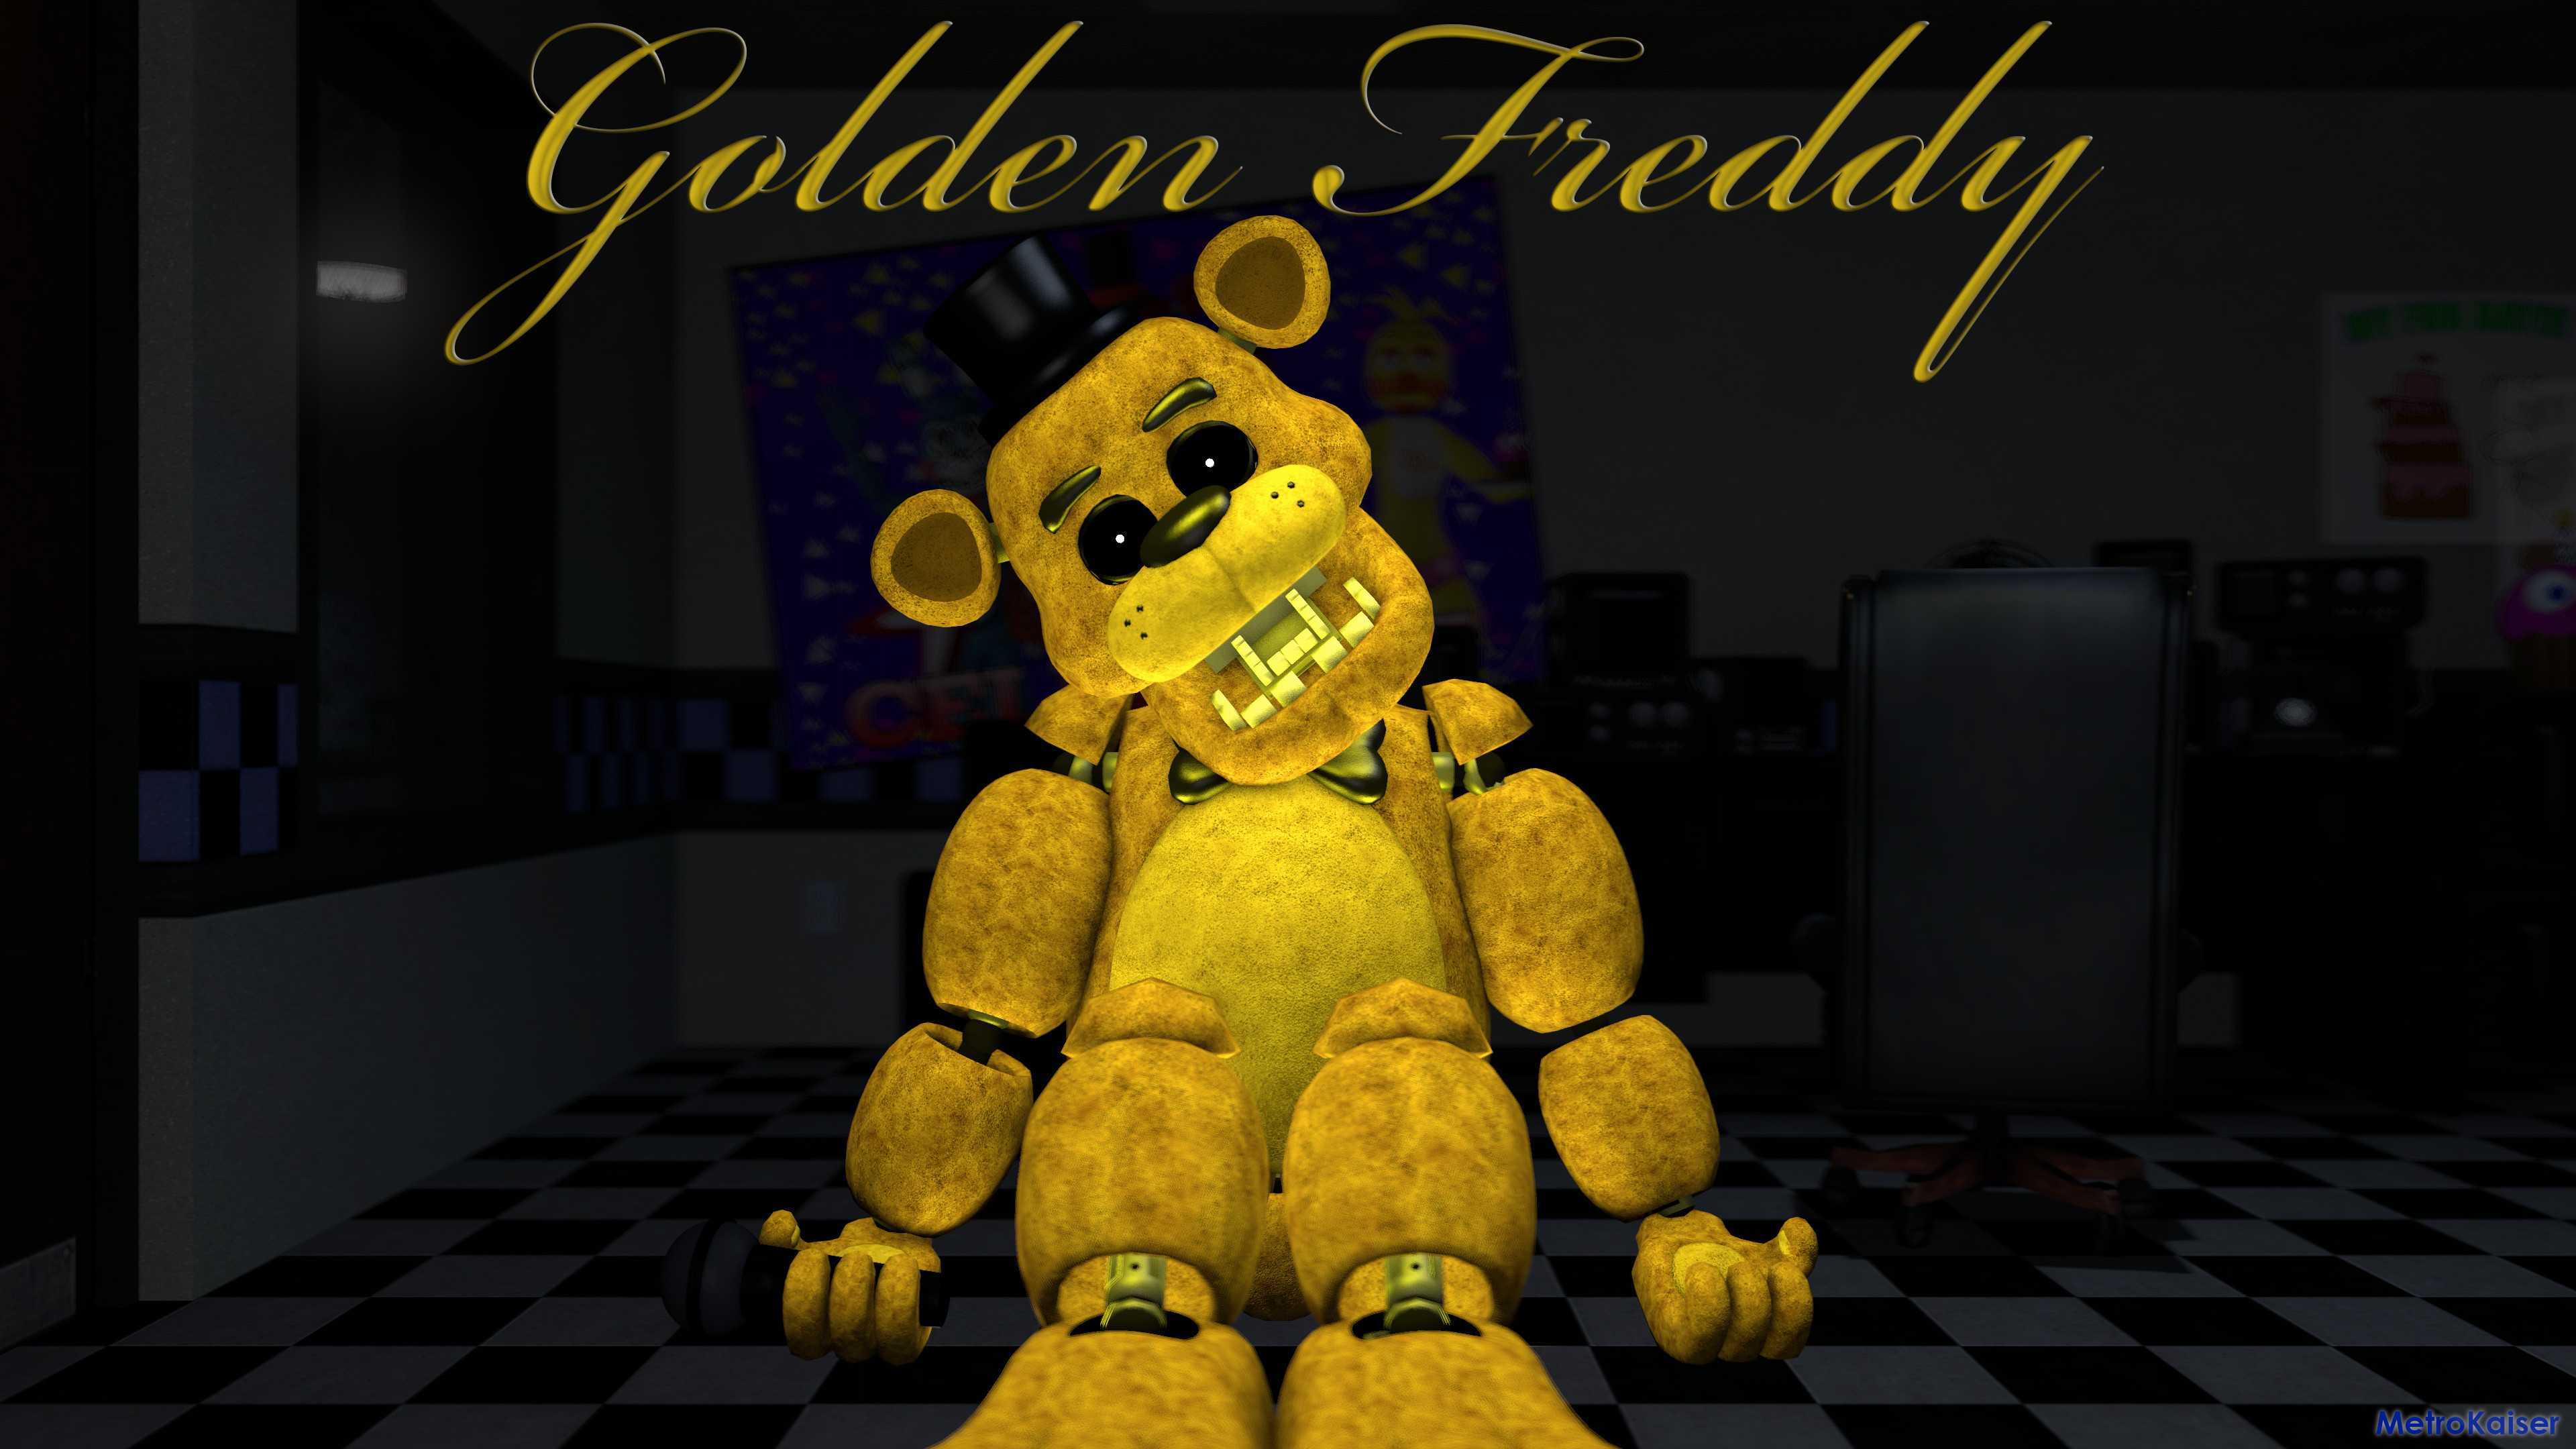 Plussy Golden Freddy wallpaper by DevilDeerYT  Download on ZEDGE  b3f6